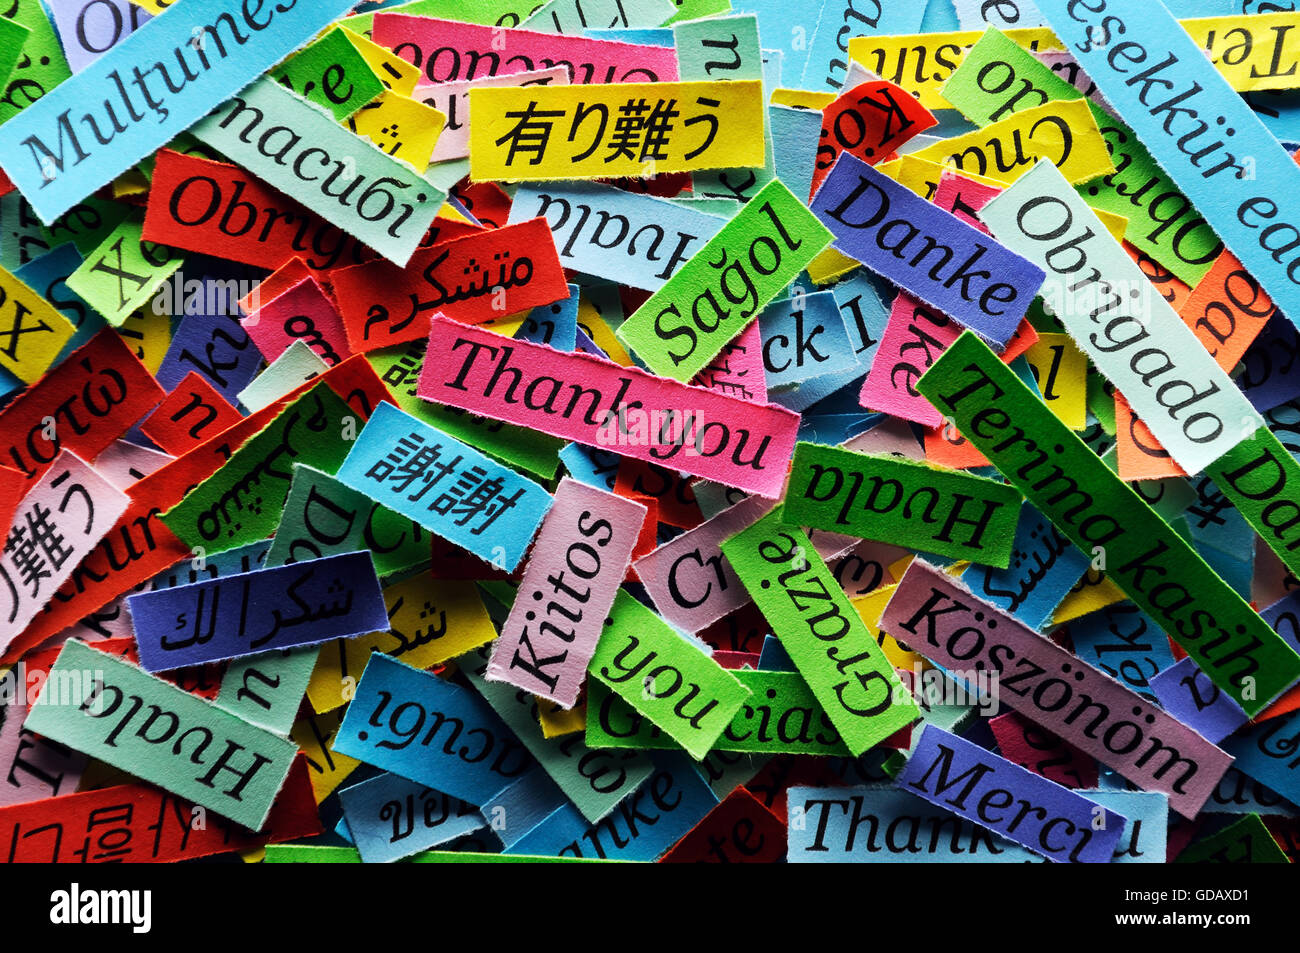 Danke Wortwolke auf farbiges Papier verschiedene Sprachen gedruckt Stockfoto